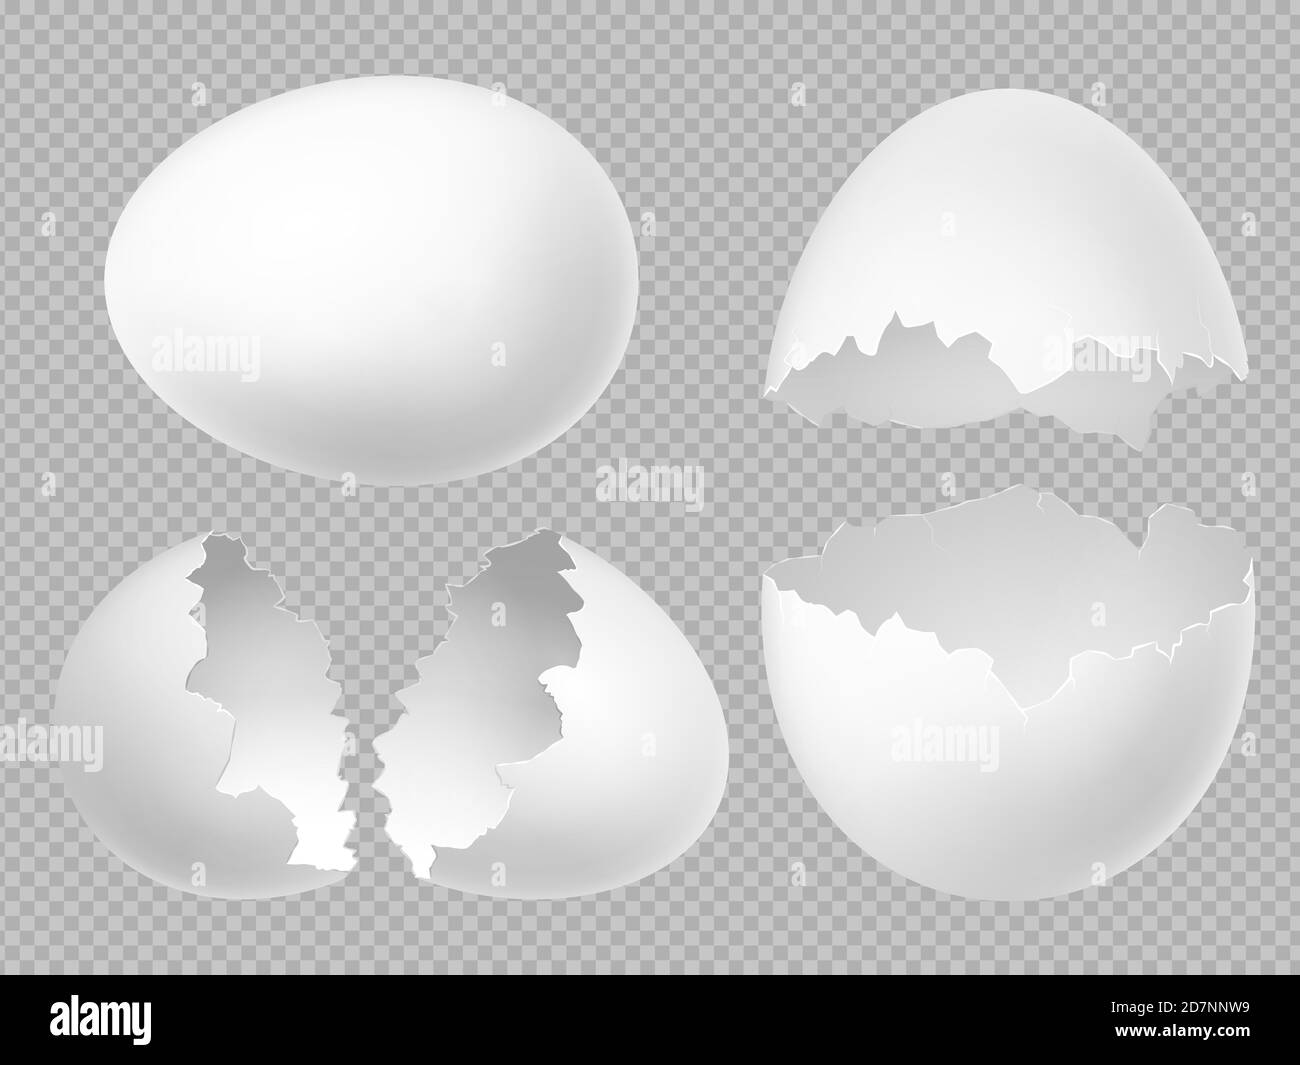 Vektor realistische weiße Eier mit ganzen und zerbrochenen Eier isoliert auf transparentem Hintergrund gesetzt. Abbildung der Eierschale, Schale aus zerbrochenem Ei Stock Vektor